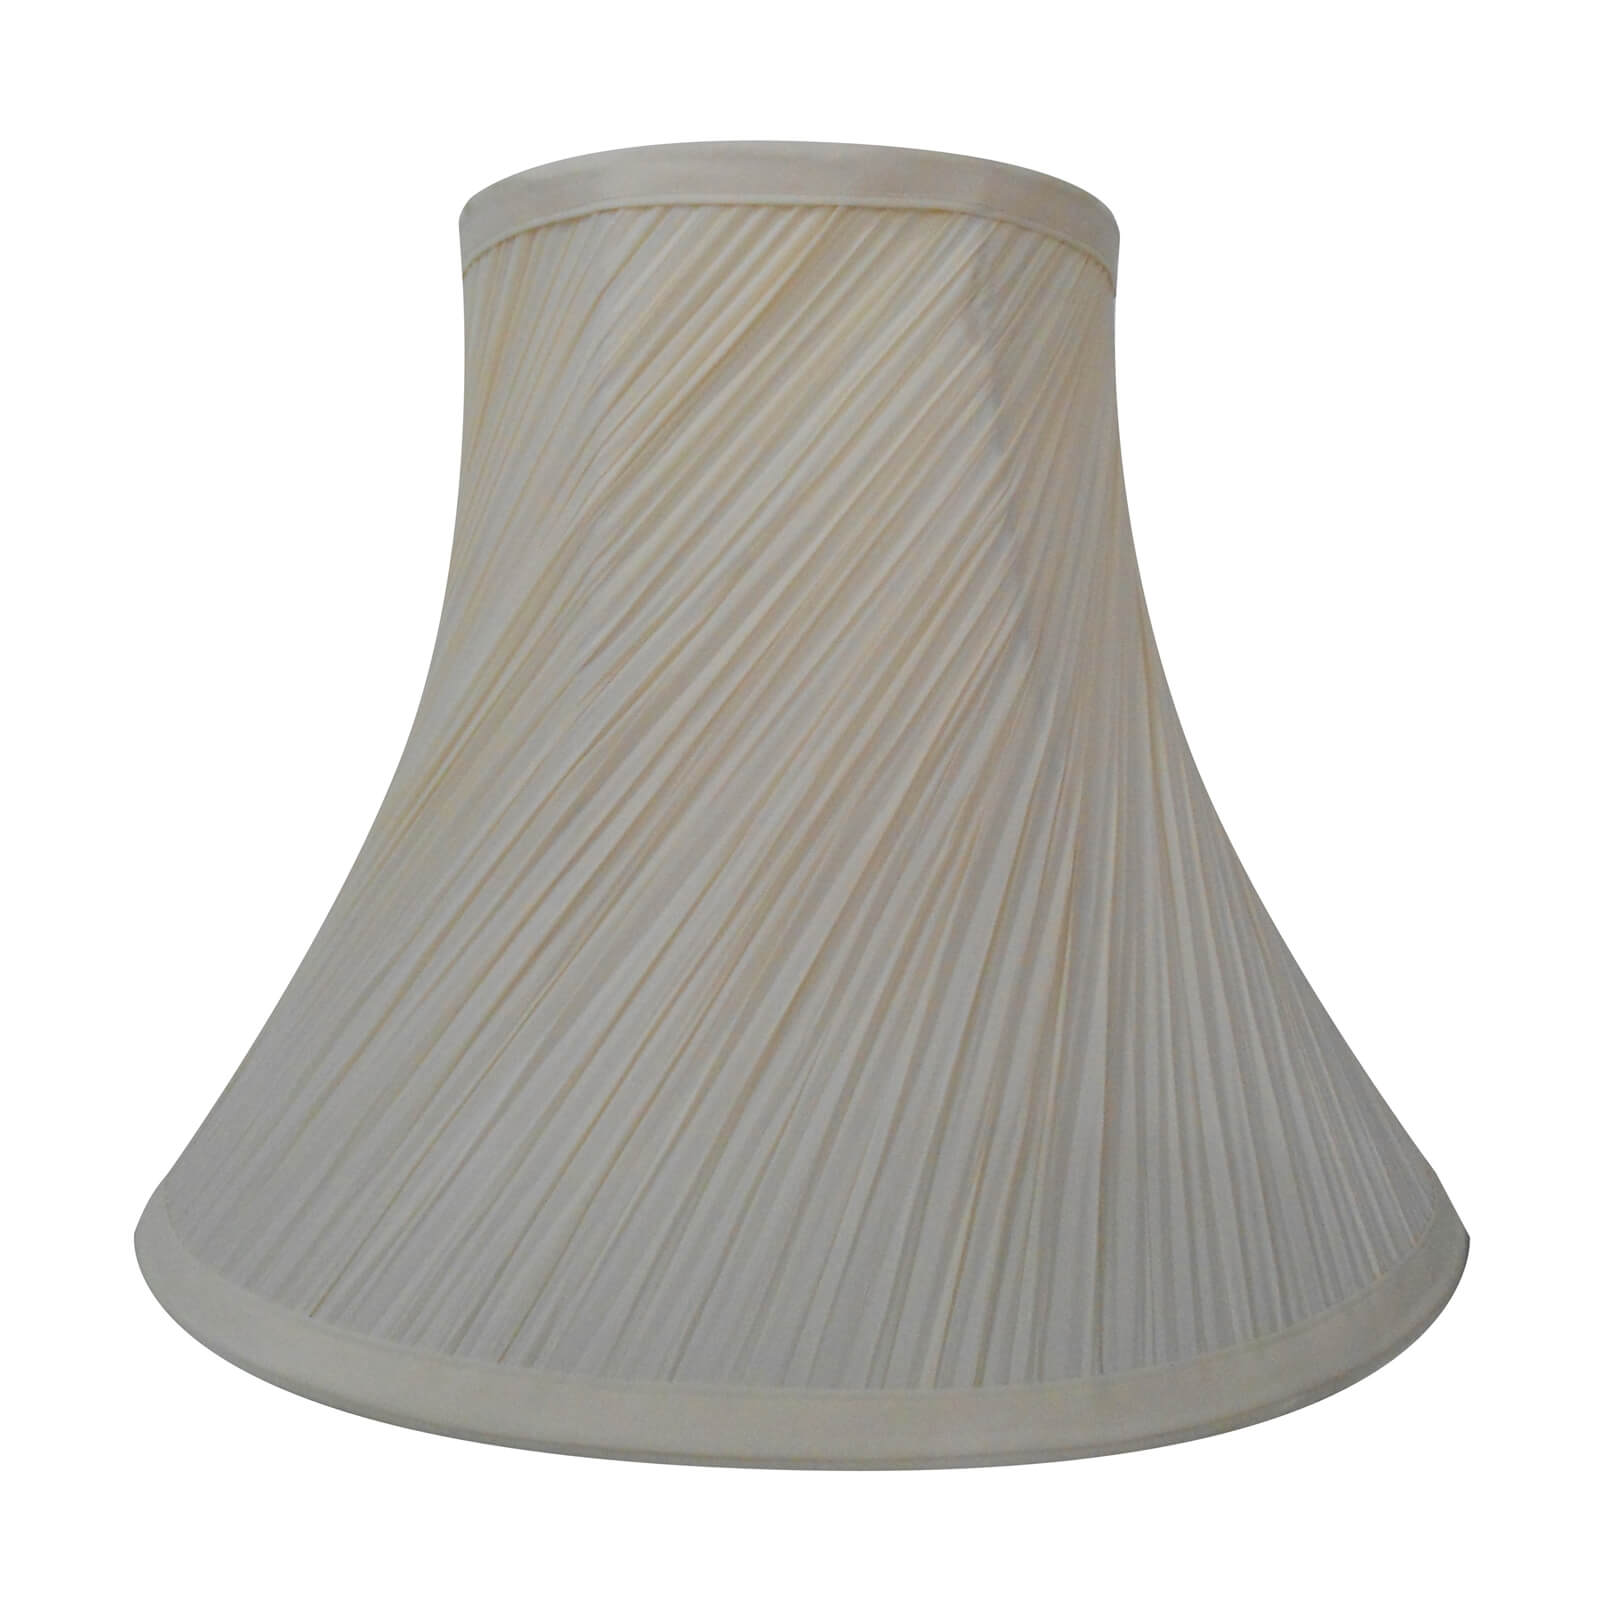 Photo of Swirl Pleat Lamp Shade - Cream - 30cm